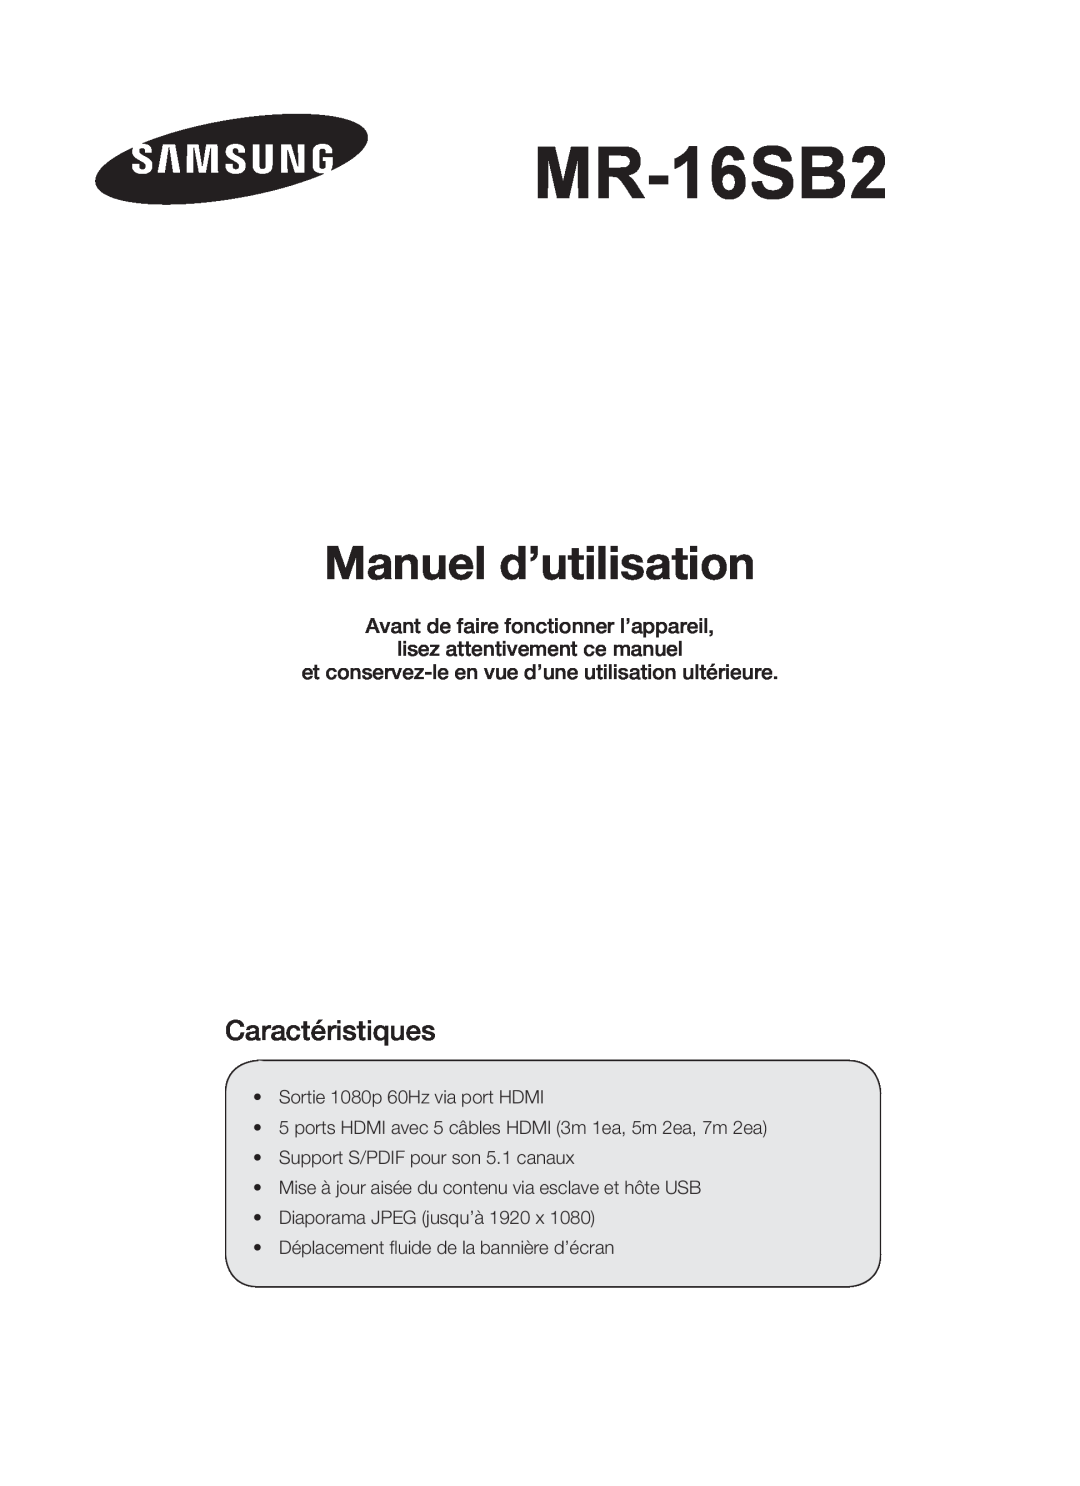 Samsung MR-16SB2 manual Manuel d’utilisation, Caractéristiques, et conservez-le en vue d’une utilisation ultérieure 